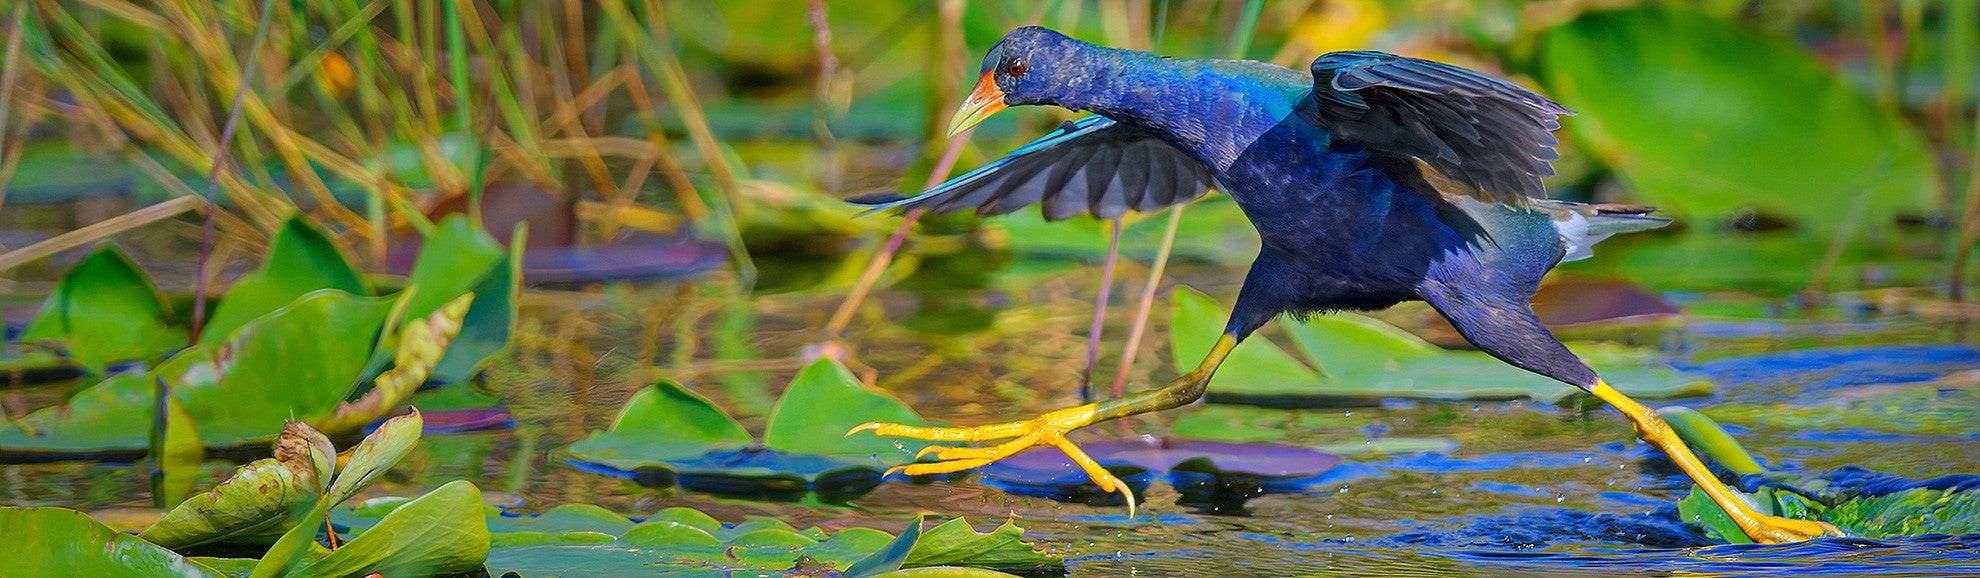 Everglades photo